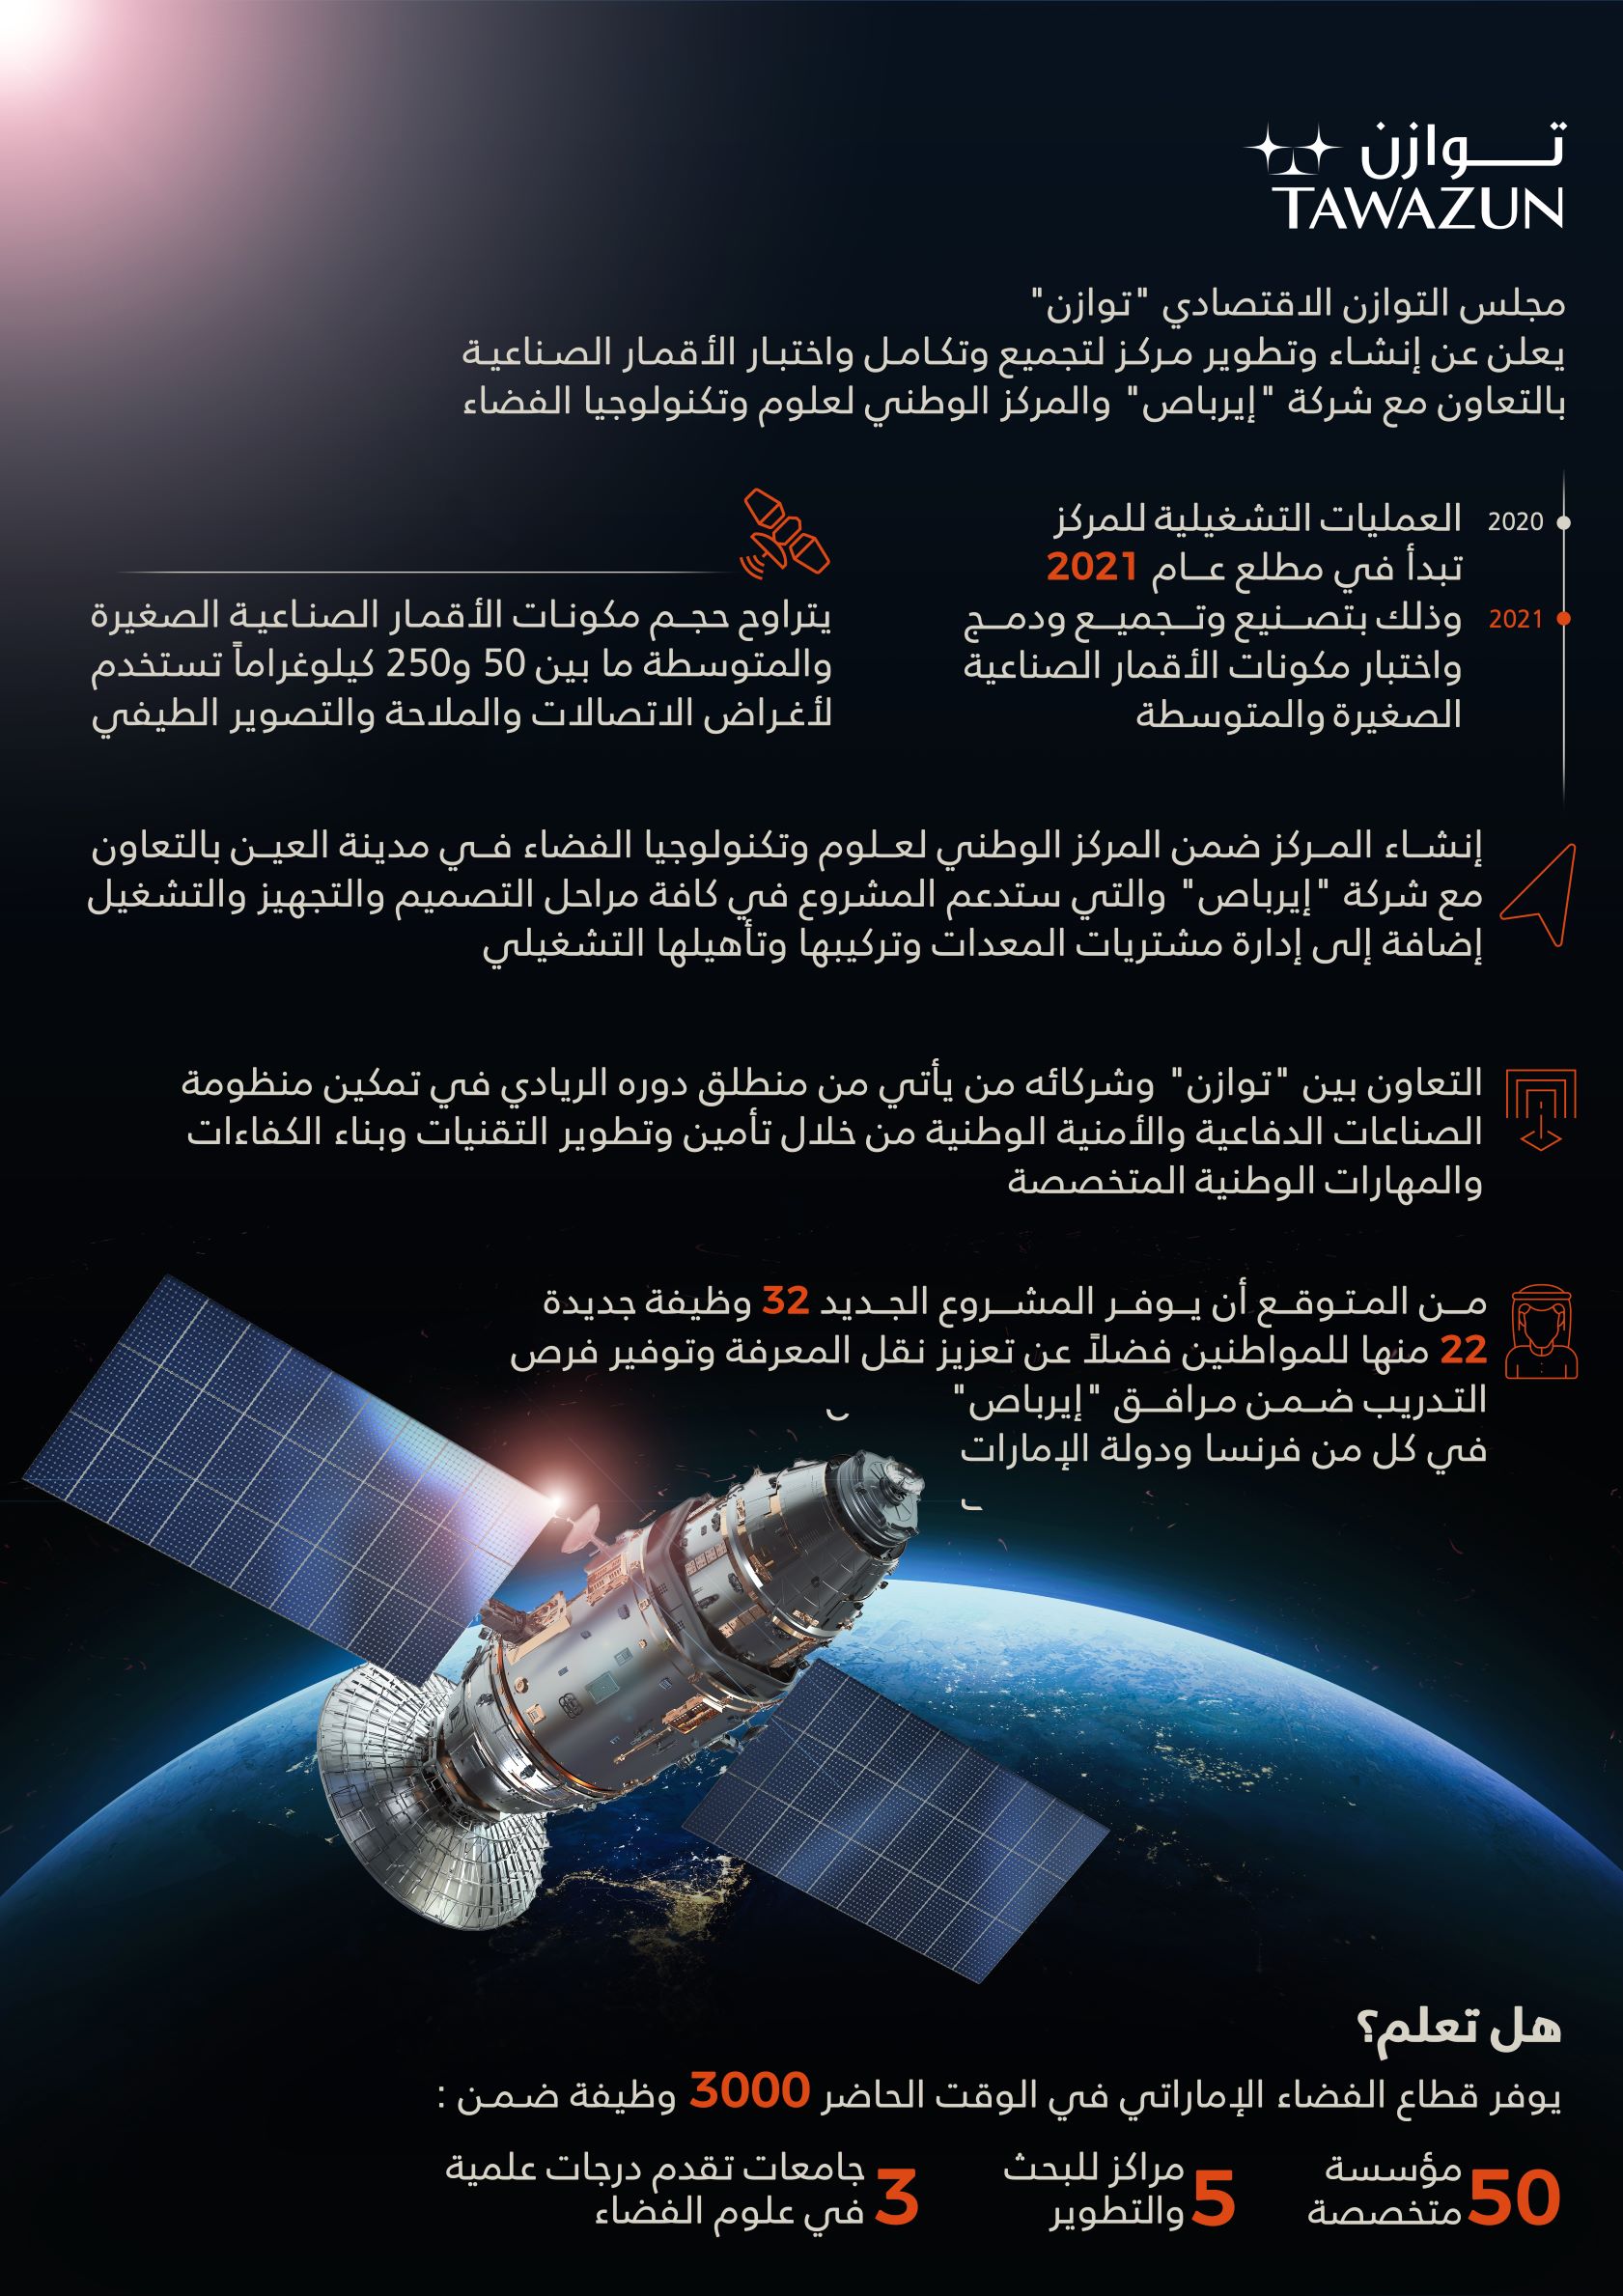 توازن يعلن عن إطلاق برنامج فضائي بالتعاون مع المركز الوطني لعلوم وتكنولوجيا الفضاء و إيرباص Defense Arab المنتدى العربي للدفاع والتسليح